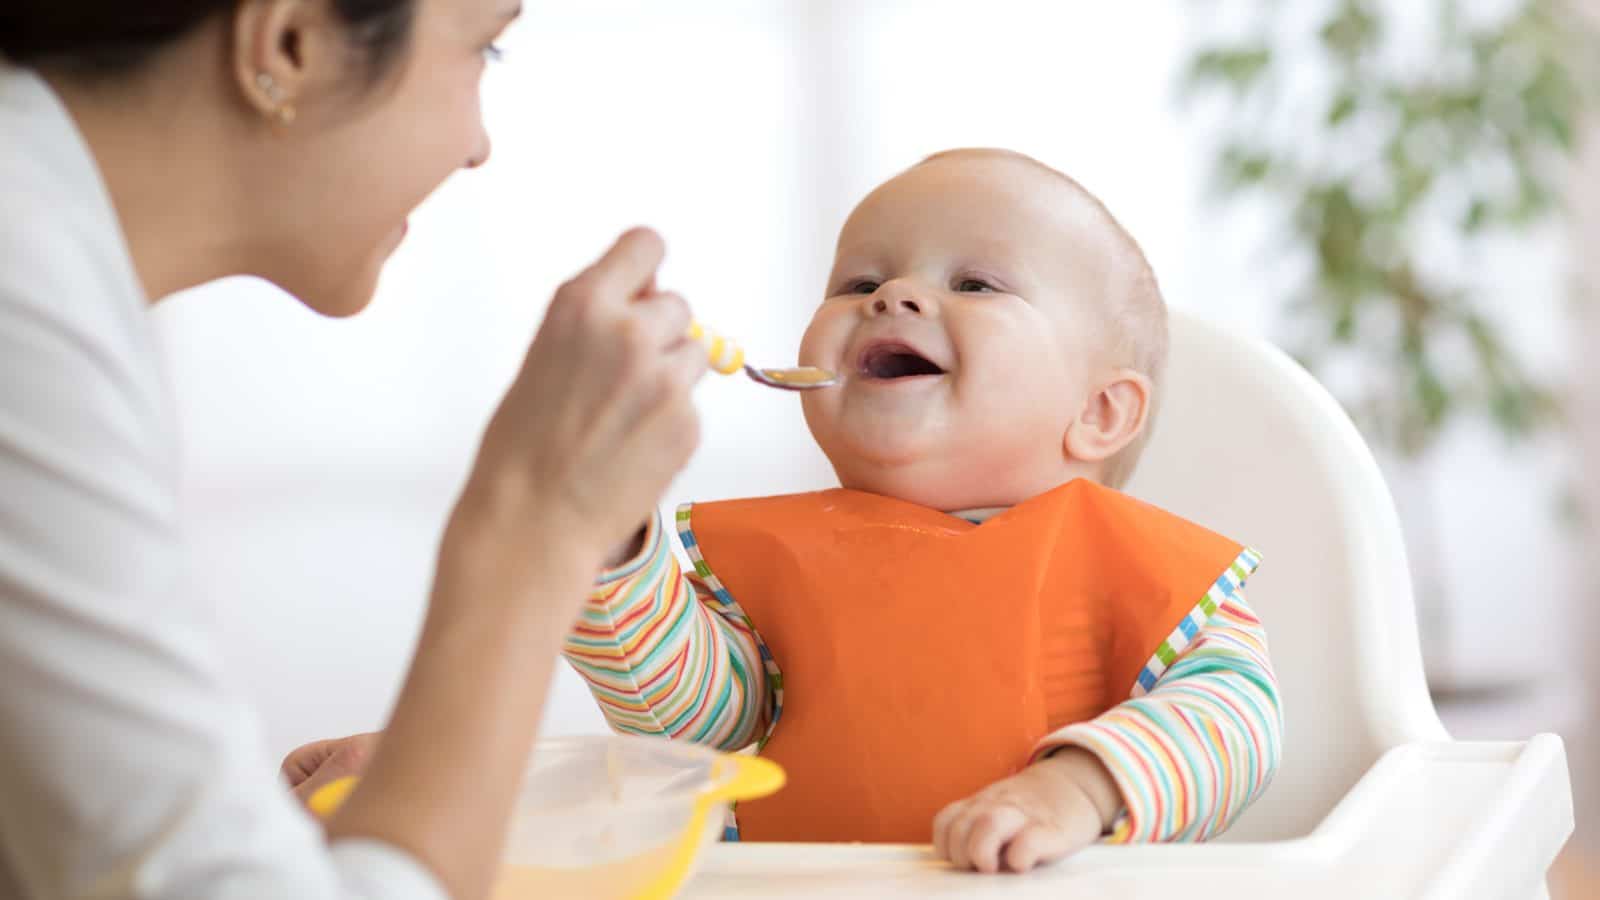 Kašice za bebe: 7 recepata koje će vaša beba obožavati